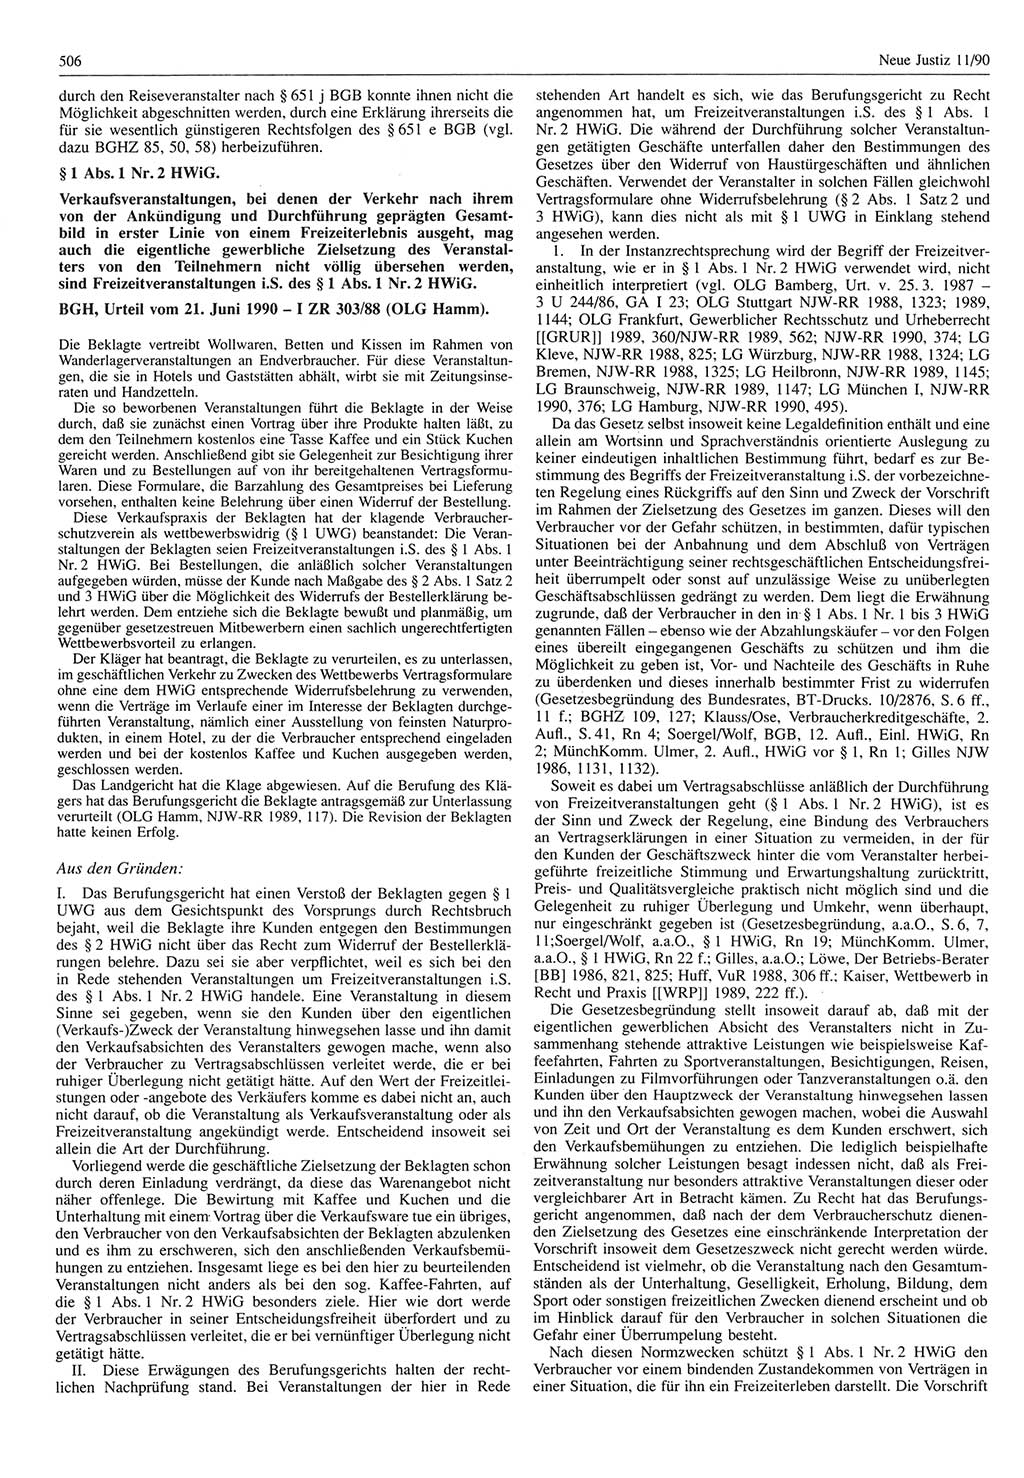 Neue Justiz (NJ), Zeitschrift für Rechtsetzung und Rechtsanwendung [Deutsche Demokratische Republik (DDR)], 44. Jahrgang 1990, Seite 506 (NJ DDR 1990, S. 506)